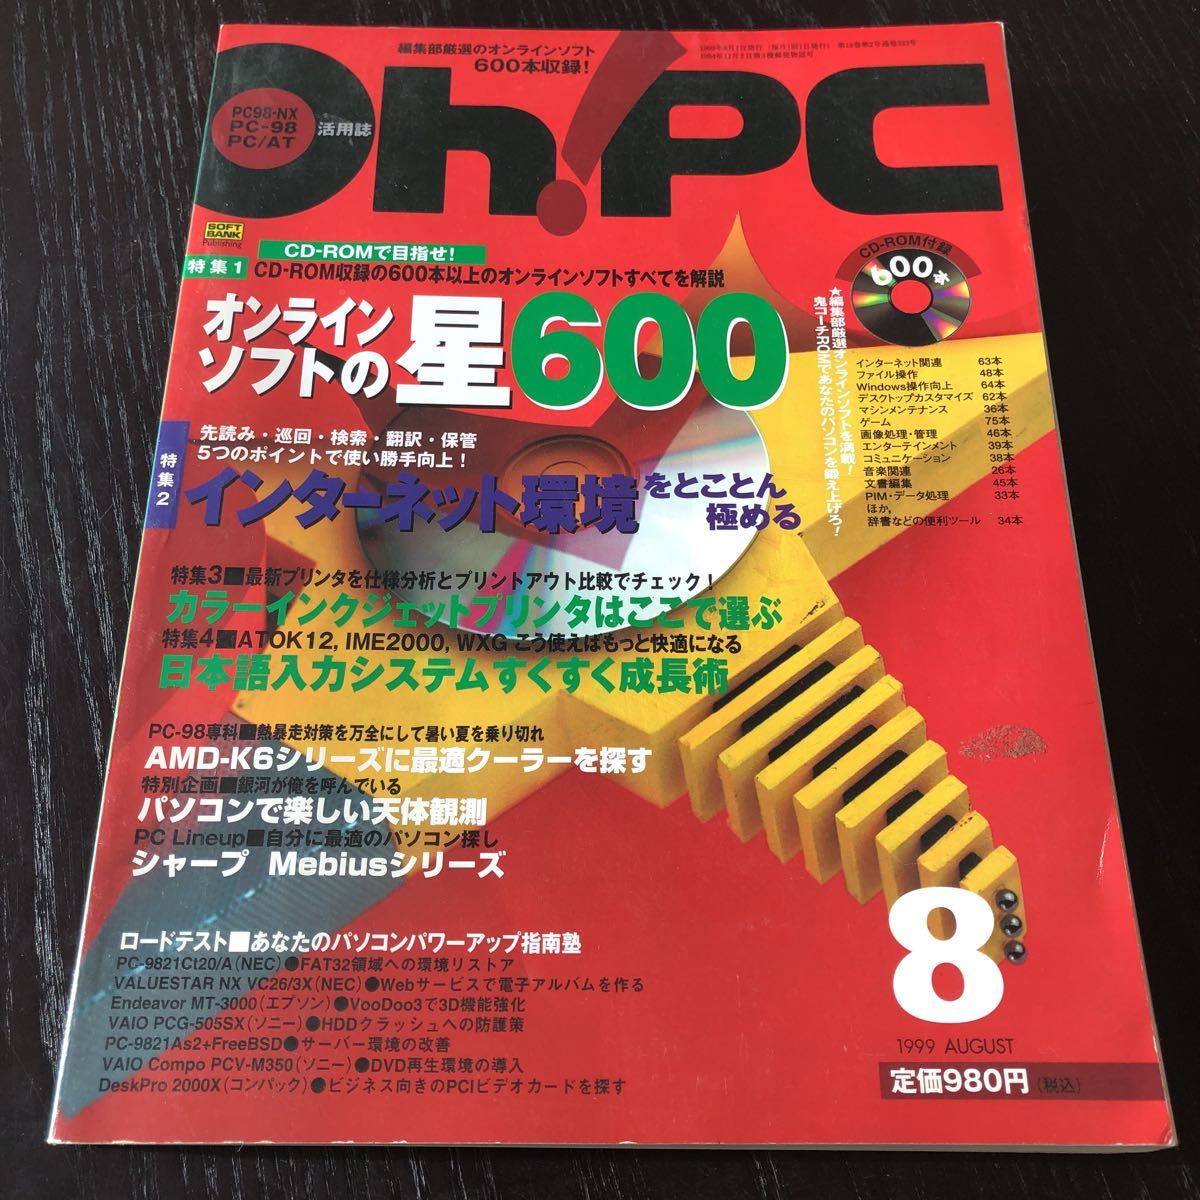 i44 OhPC 1999 год 8 месяц номер цифровая камера персональный компьютер CD-ROM обработка изображений программное обеспечение интернет map таблица конструкция игра функционирование u il s обратная сторона . информация журнал 